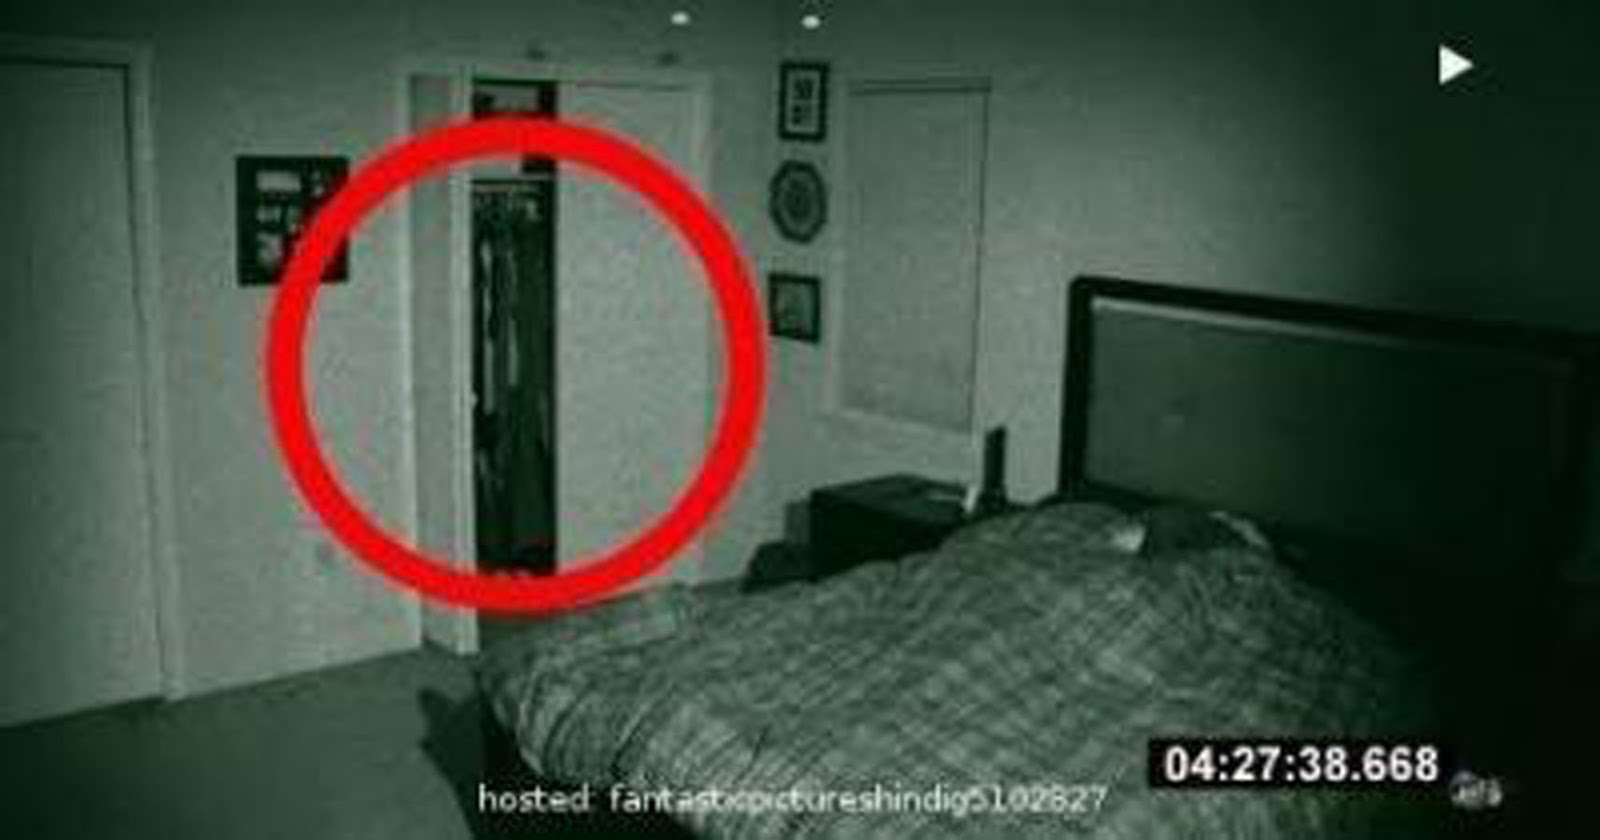 Скрытые съемки измена жене. Скрытая видеокамера. Страшный призрак в квартире.